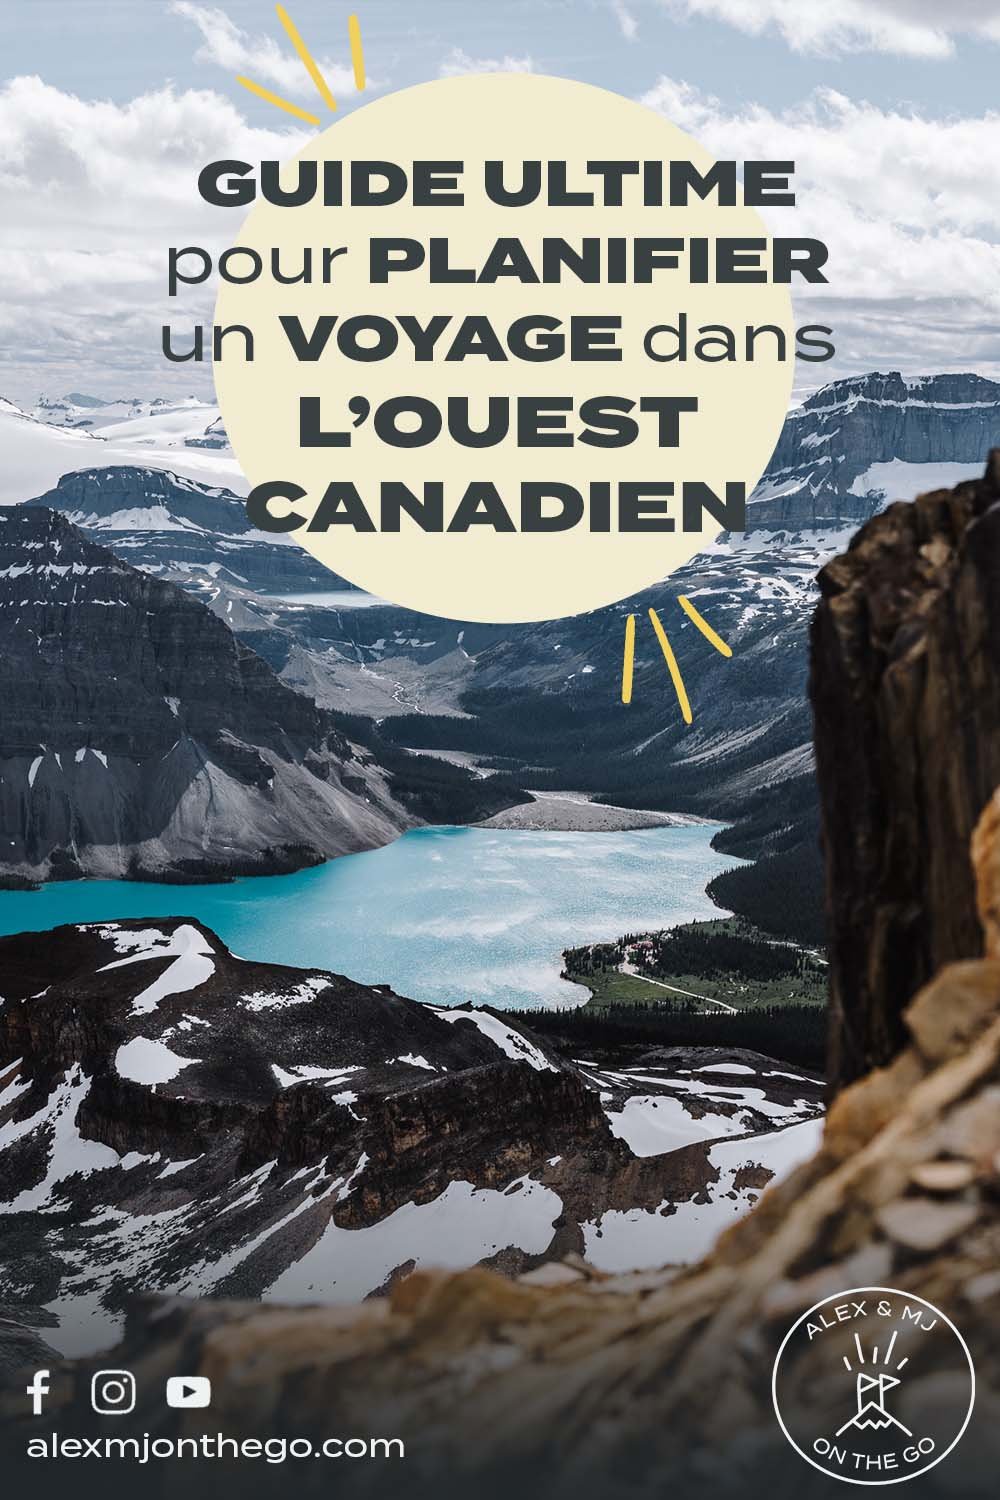 Guide ultime pour planifier un voyage dans l’Ouest canadien2.jpg